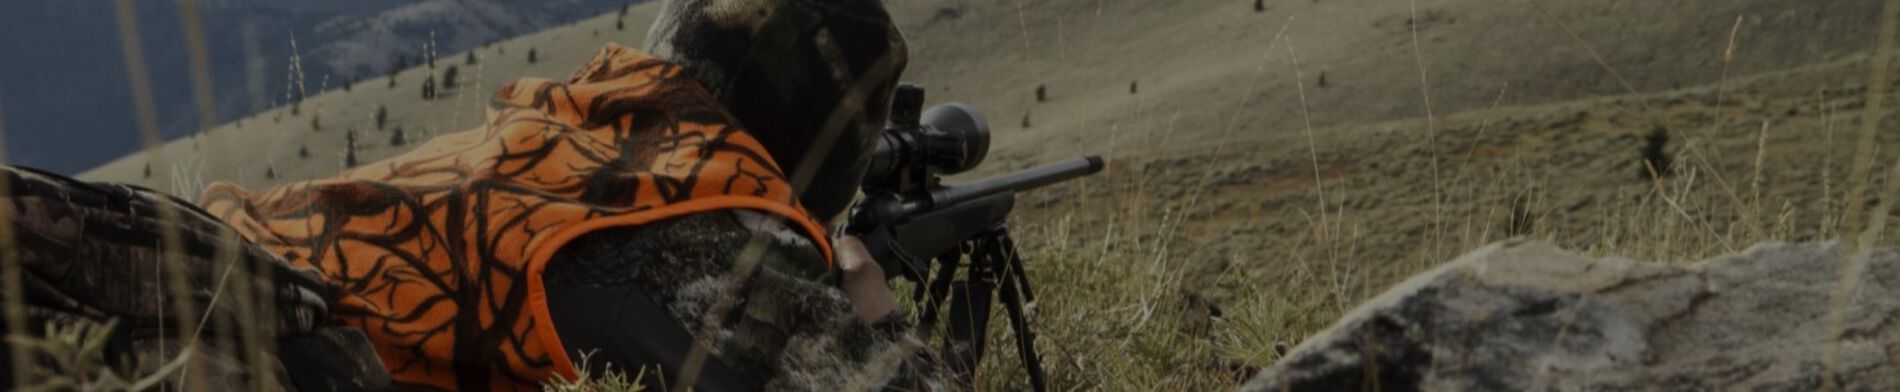 Hunter Shooting a Rifle